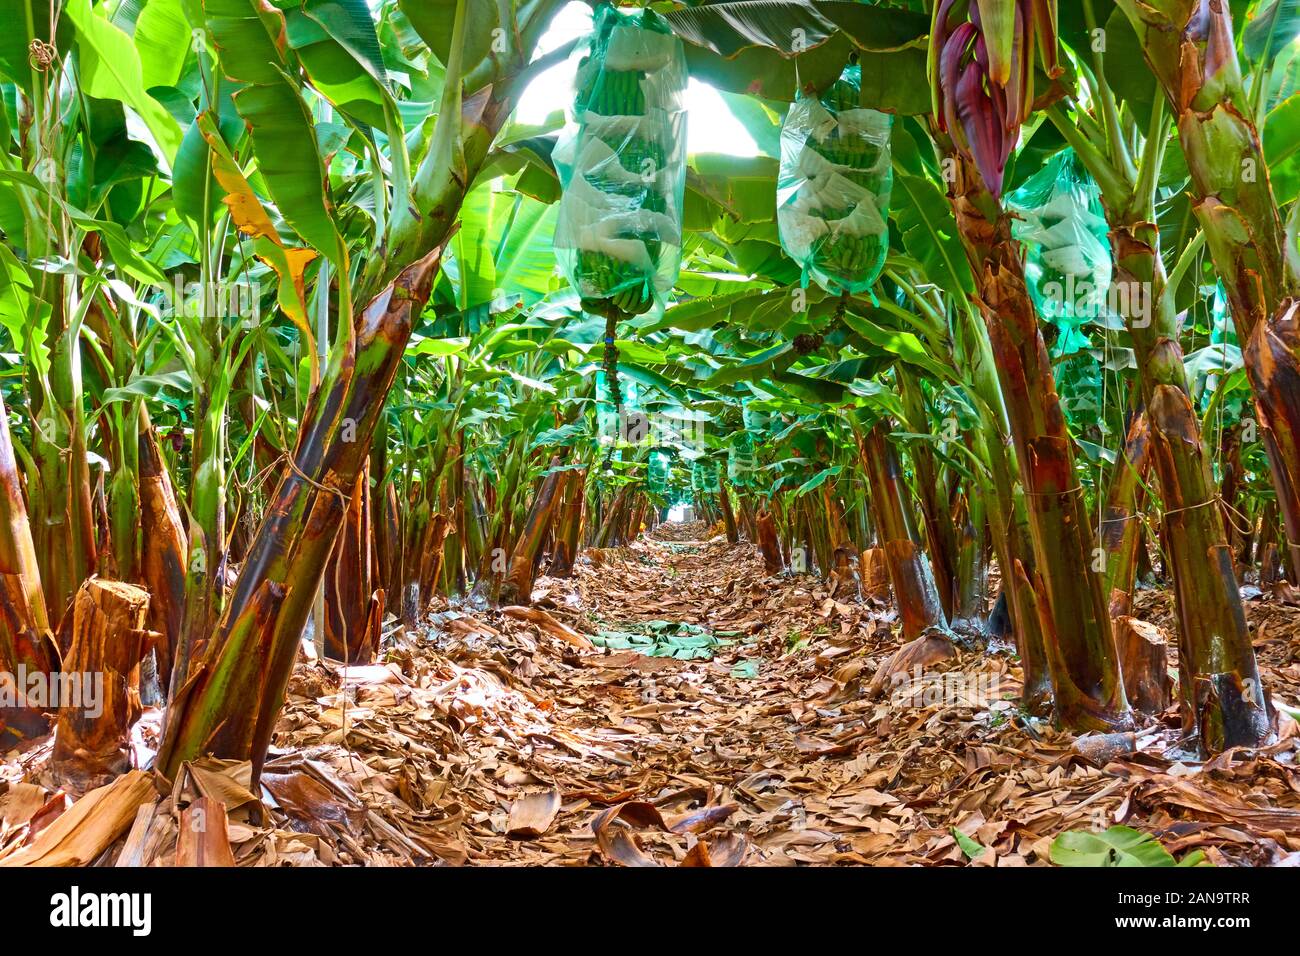 Bananenplantage - Reihen von Bäumen Bananen im Garten Stockfoto